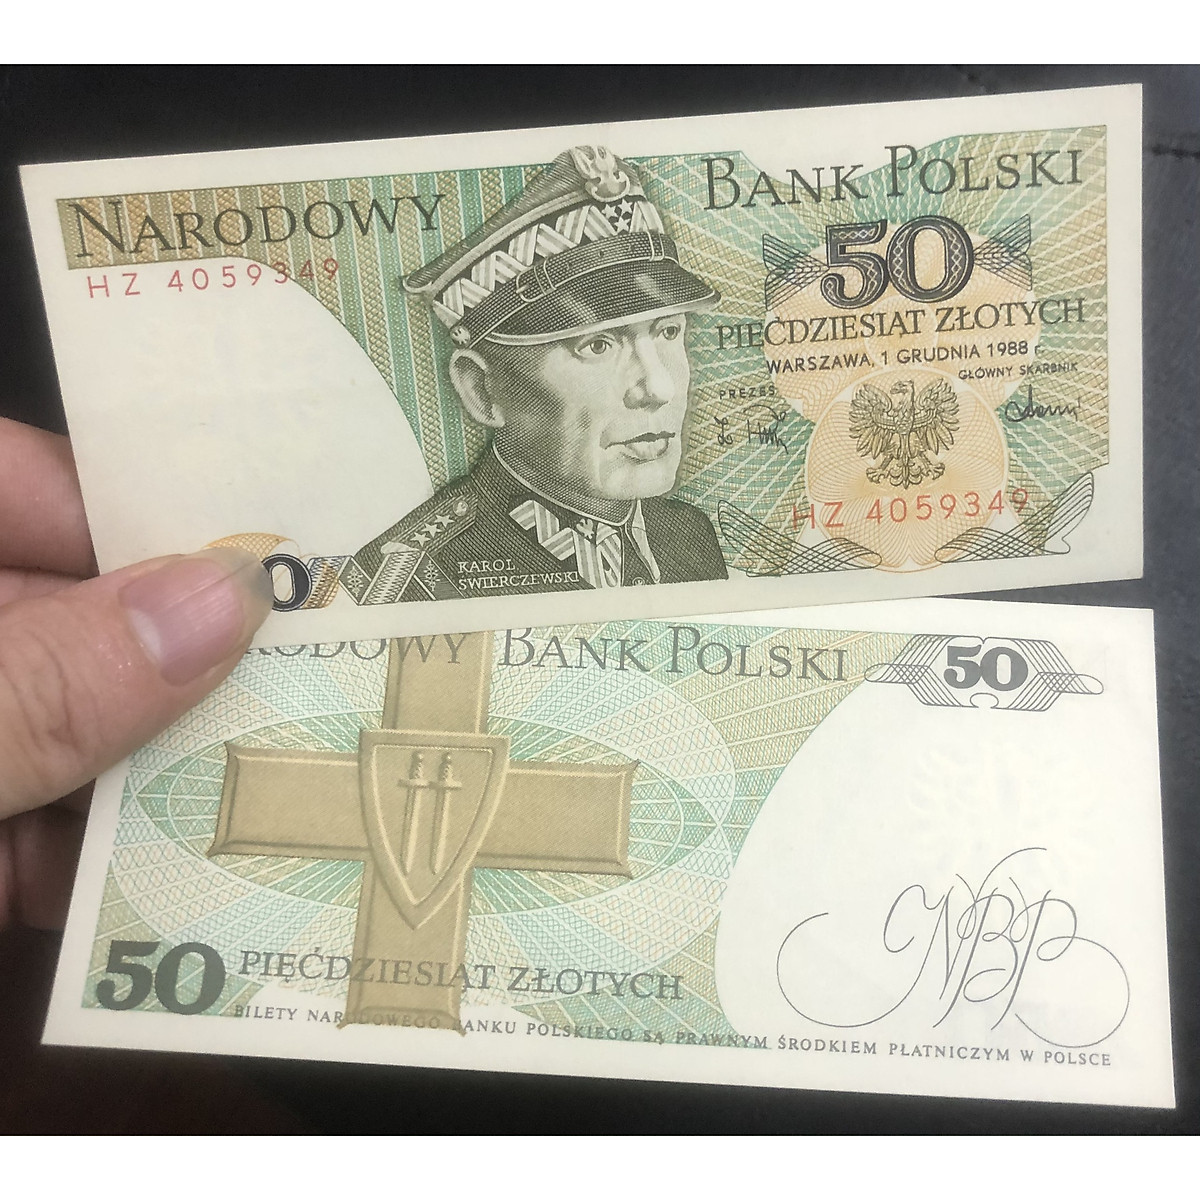 Tiền Ba Lan 50 Zlotych hình ảnh công giáo sưu tầm, có phơi bảo ...